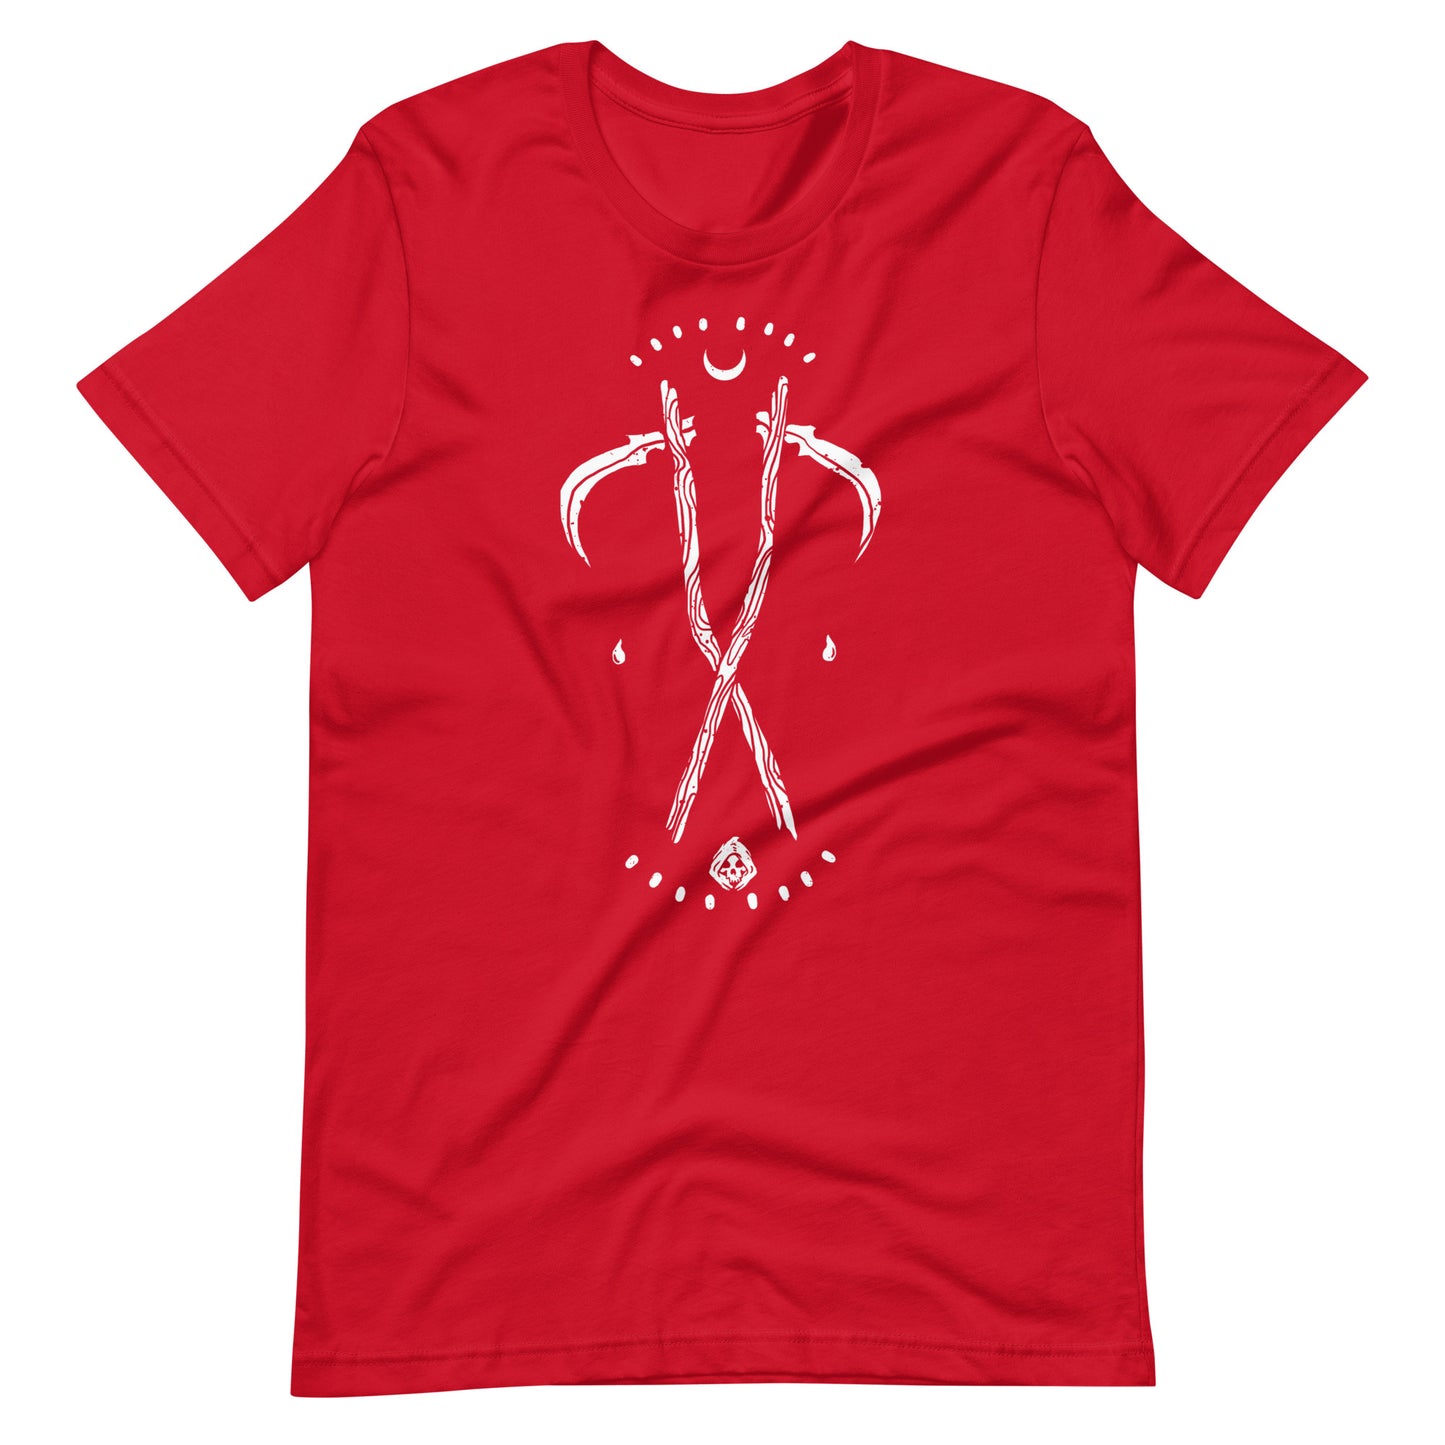 Grim - Men's t-shirt - Red Front